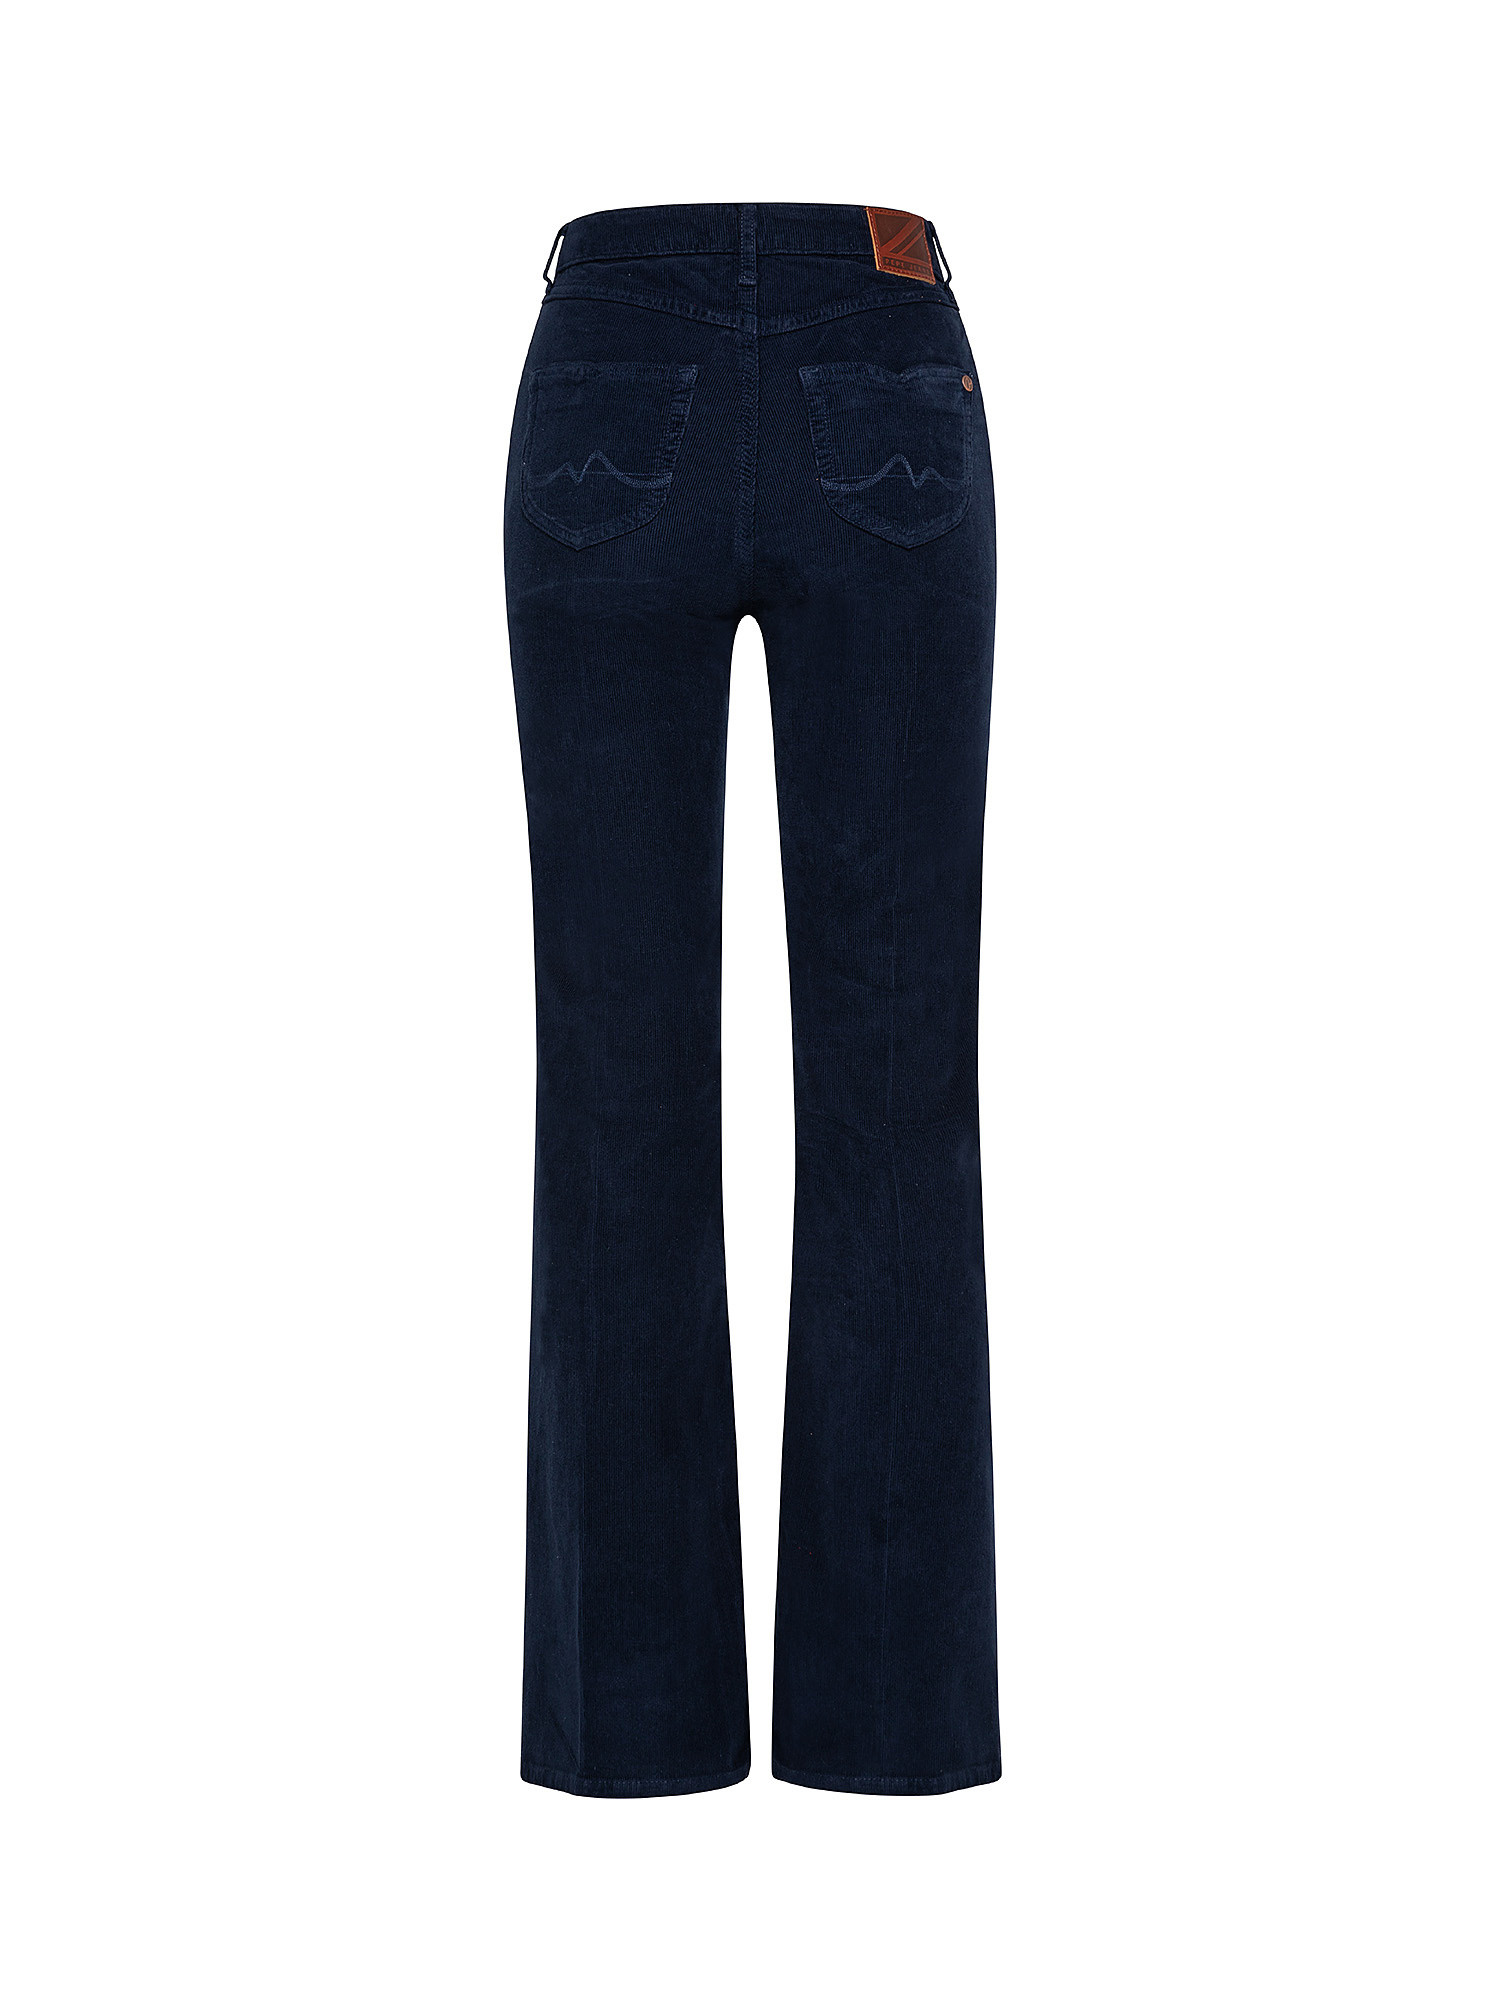 Pantaloni Willa, Blu scuro, large image number 1